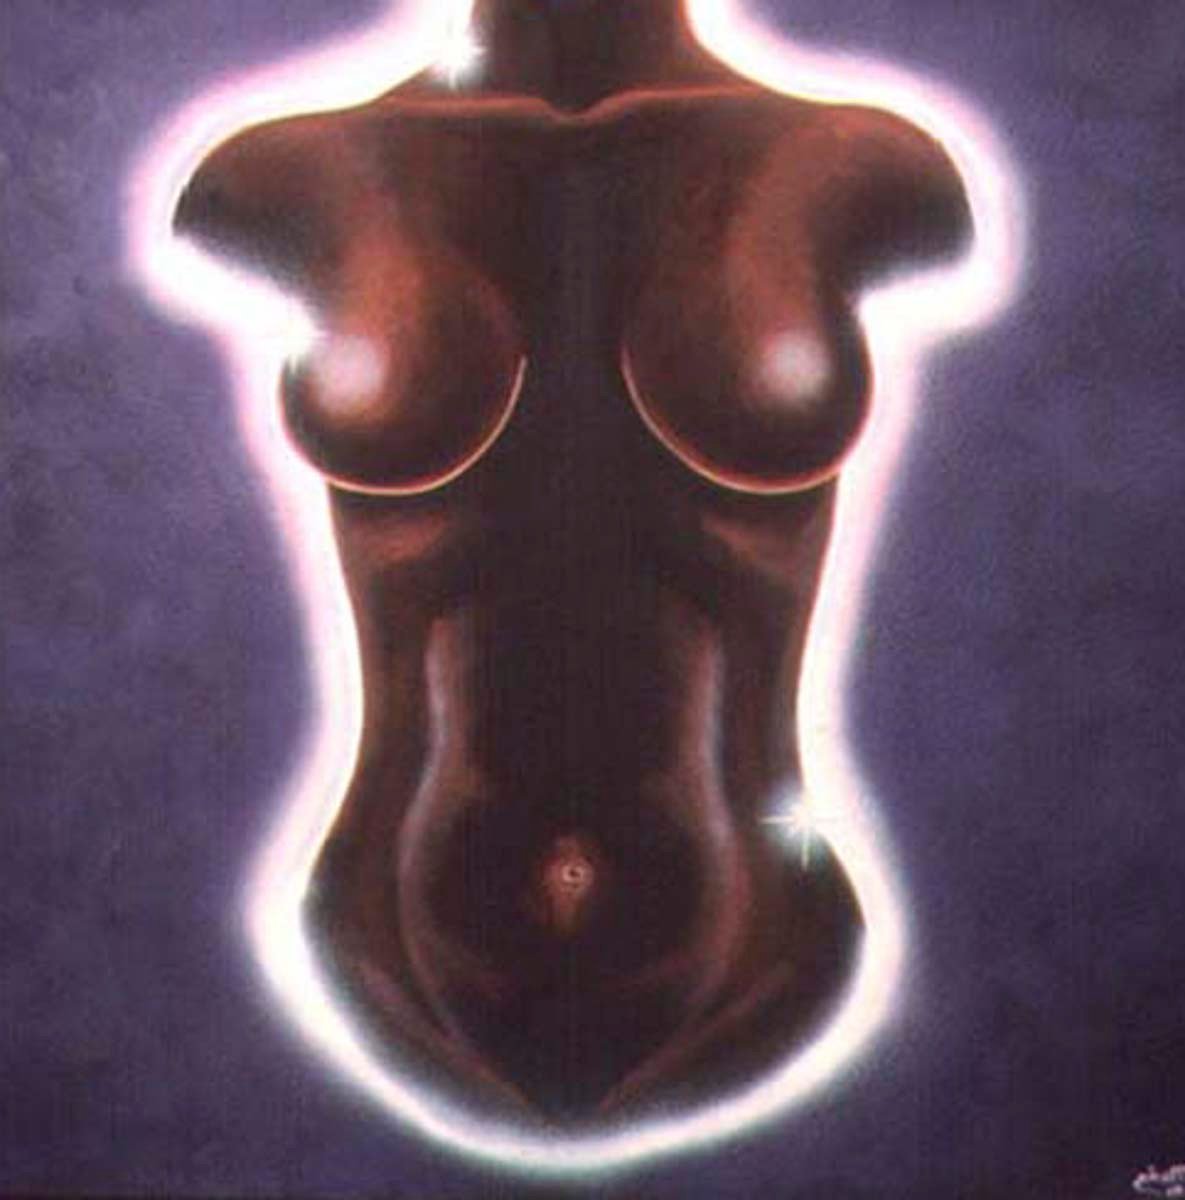 LA CUERPA MÍSTICA. Iluminación en cuerpa de mujer, "MUJER EN ILUMINACIÓN" (Serie díptico).